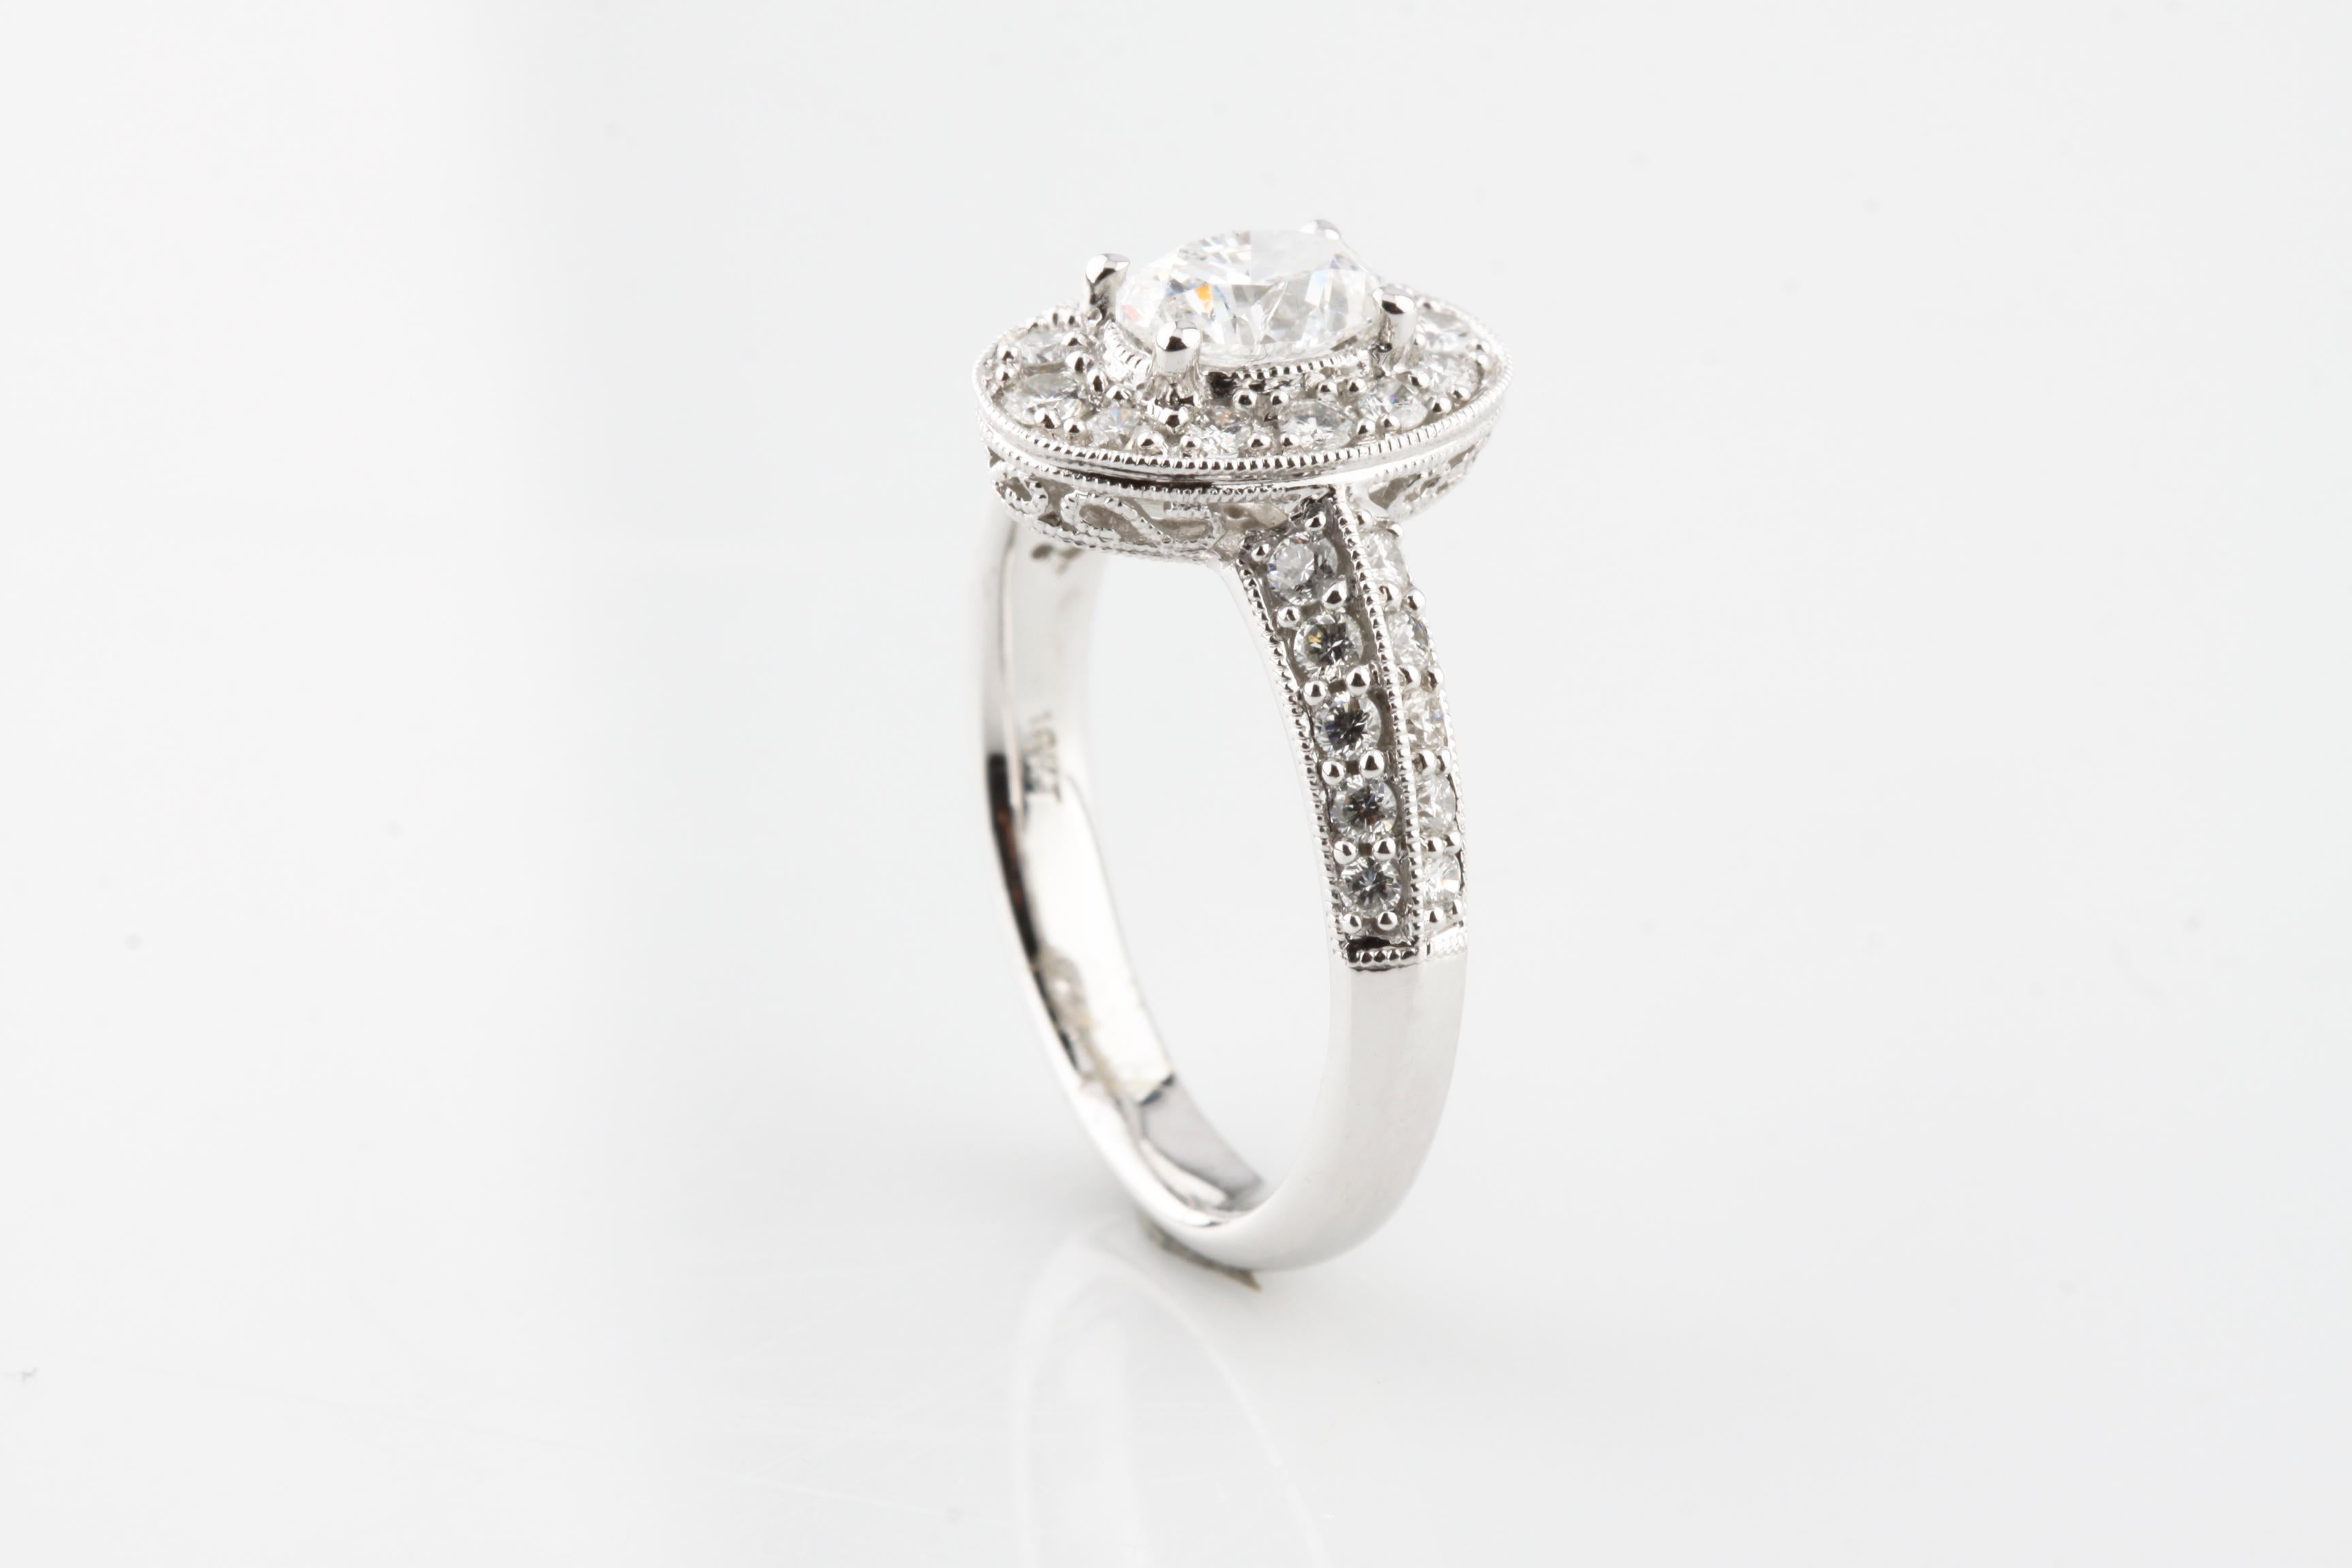 18 carat white gold engagement ring